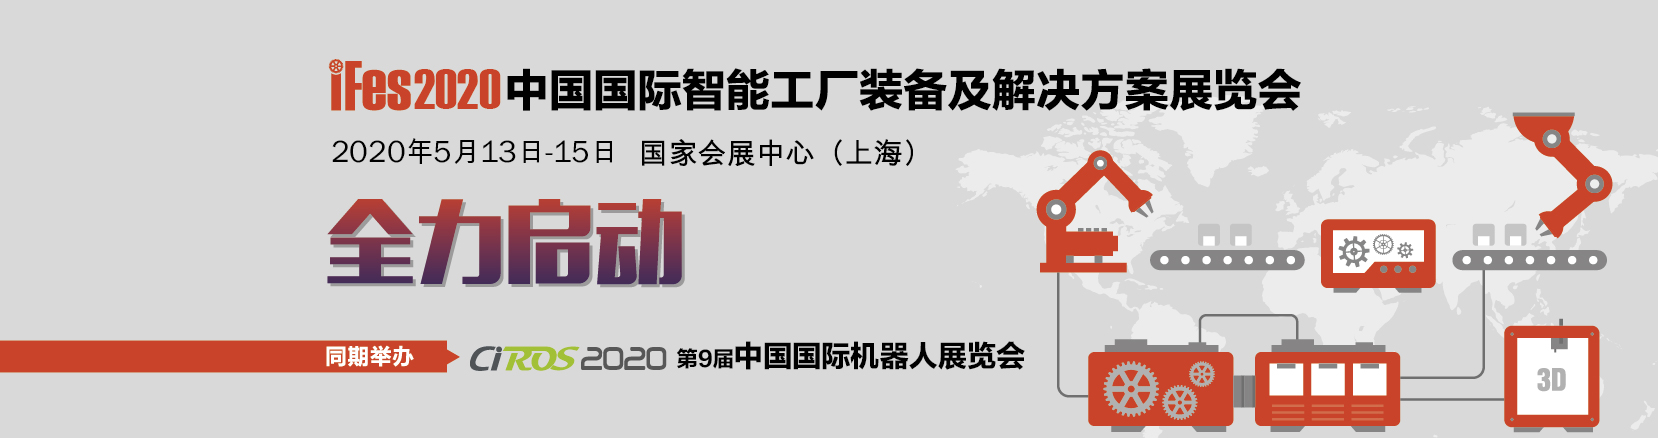 iFes2020中国国际智能工厂装备及解决方案展览会